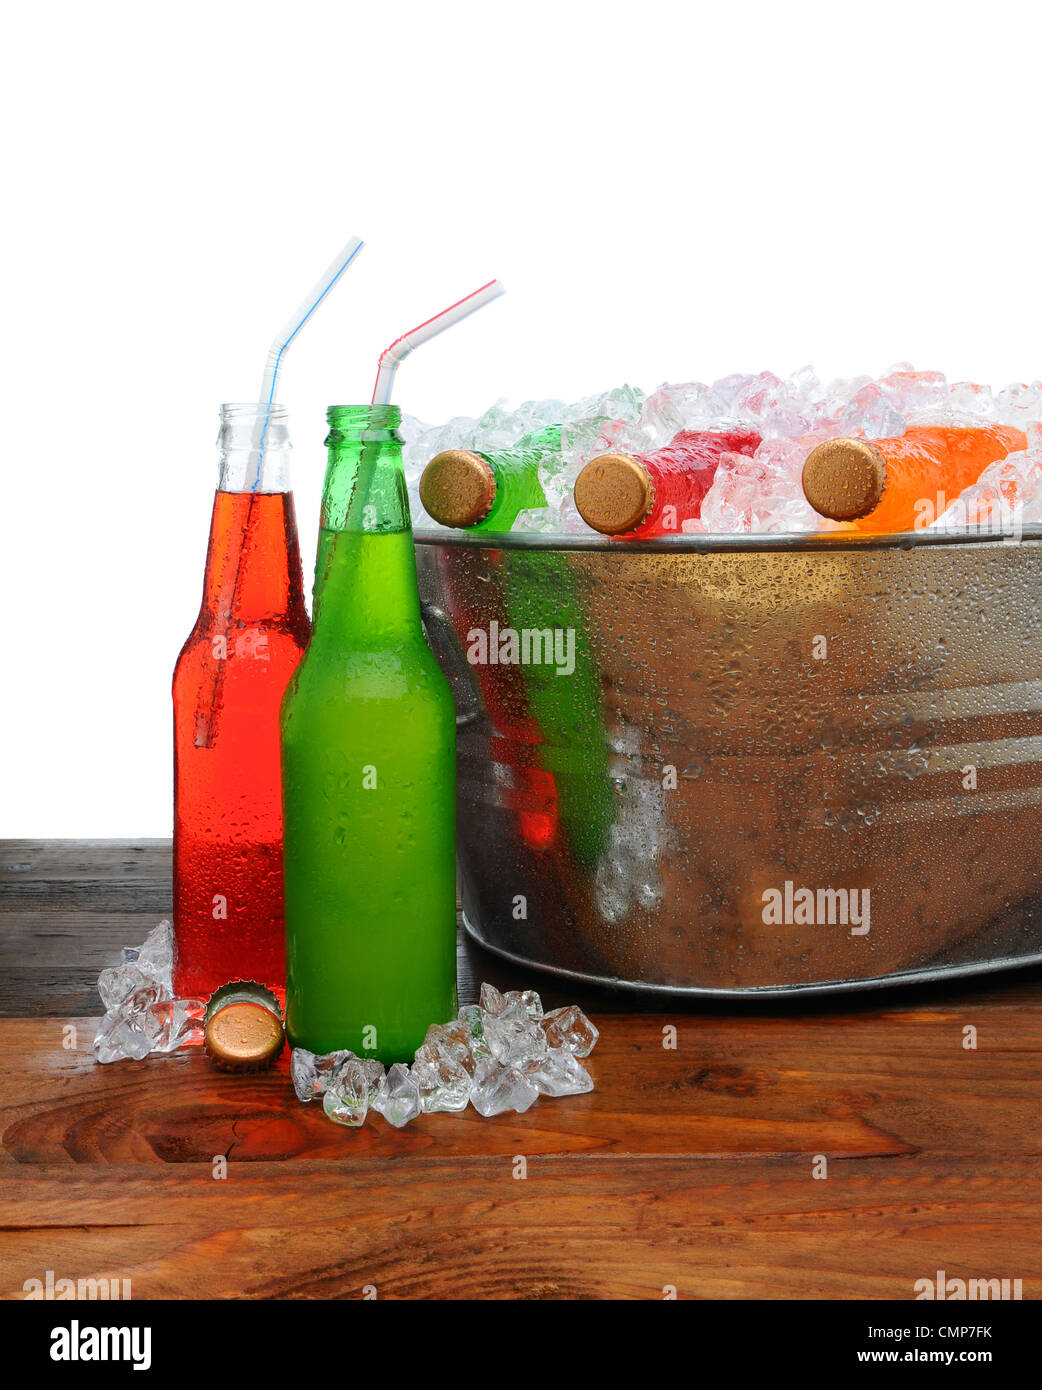 Eine Metal-Party Eimer auf einem Holztisch voller kalte Limonade. Stockfoto